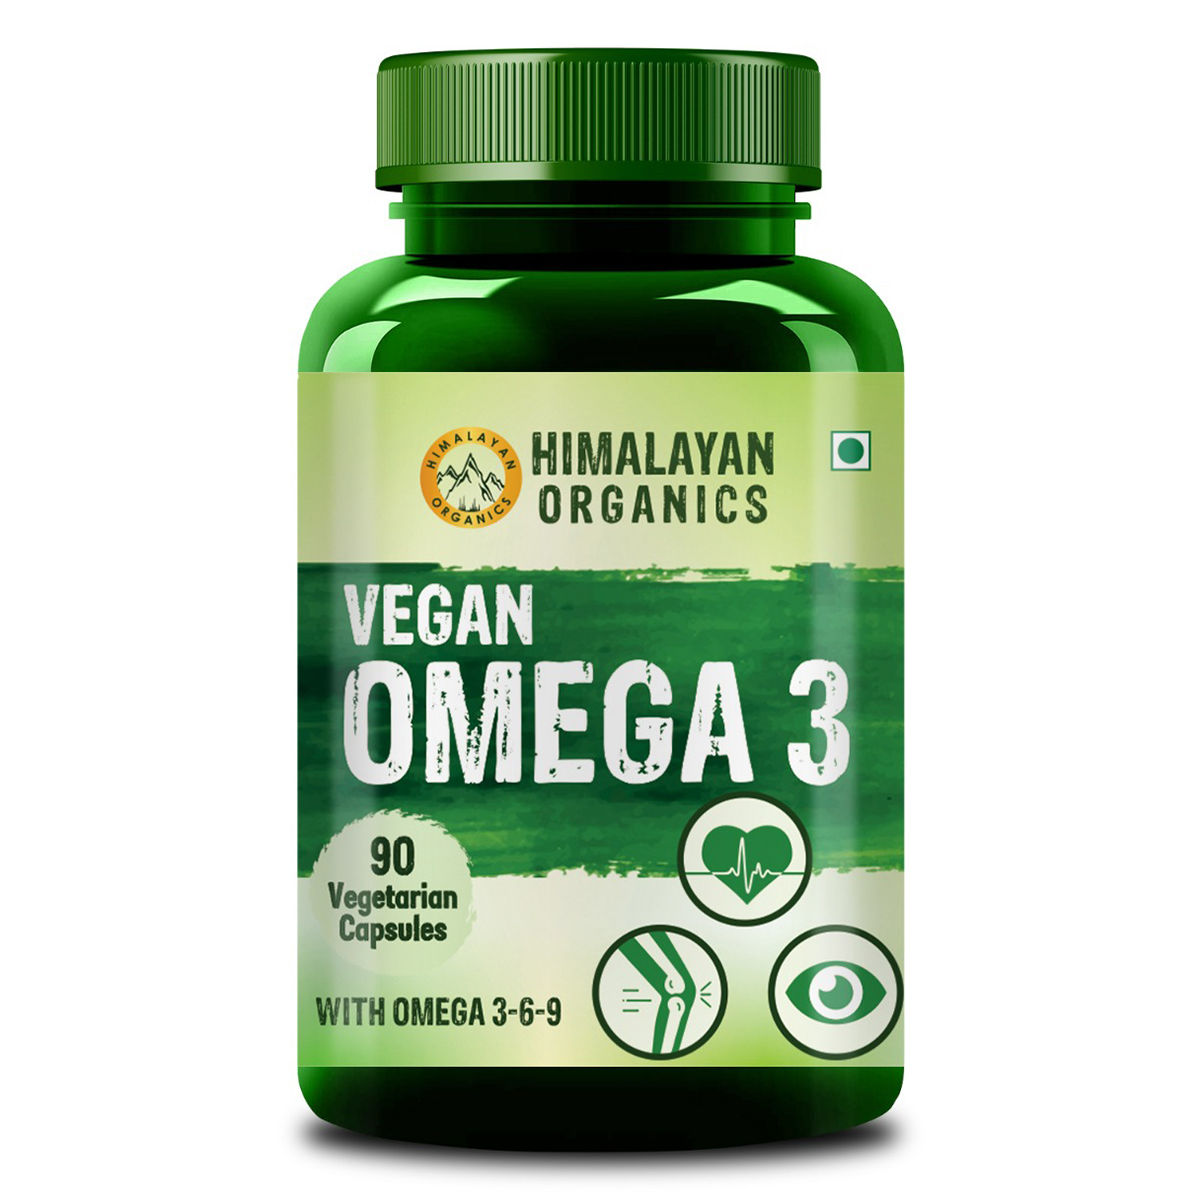 Buy Himalayan Organics Vegan Omega 3, 90 Capsules Online